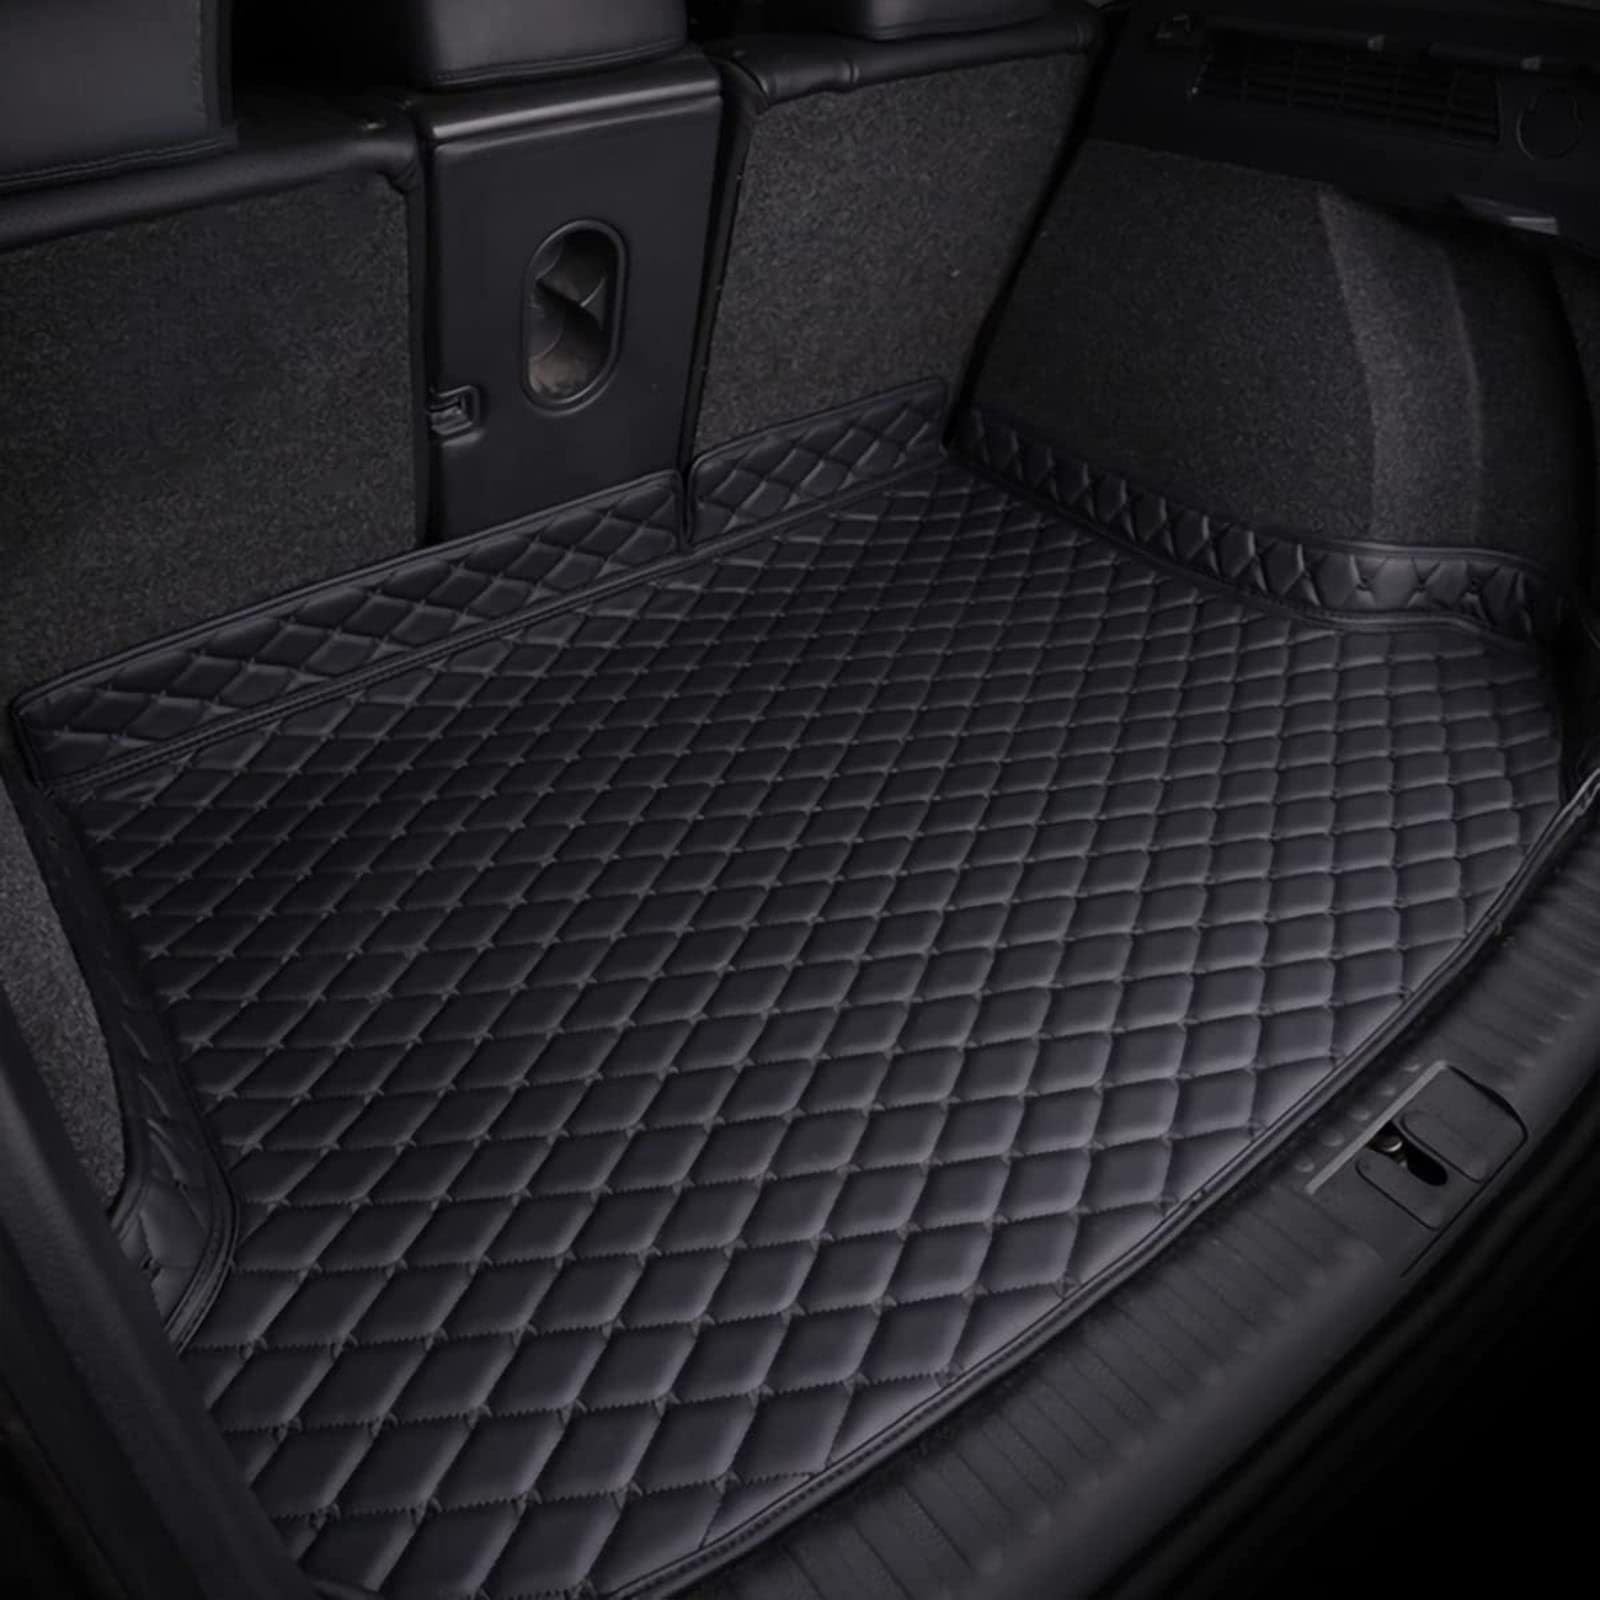 Leder Kofferraummatte für Sko-da Kodiaq 5 Seats 2019 2020 2021 2022 - Auto Kofferraumwanne - Allwetter Kofferraum Schutzmatte - Gepäckraumwanne mit Erhöhten Kanten - Gepäckraumeinlage,Black von FERFXN